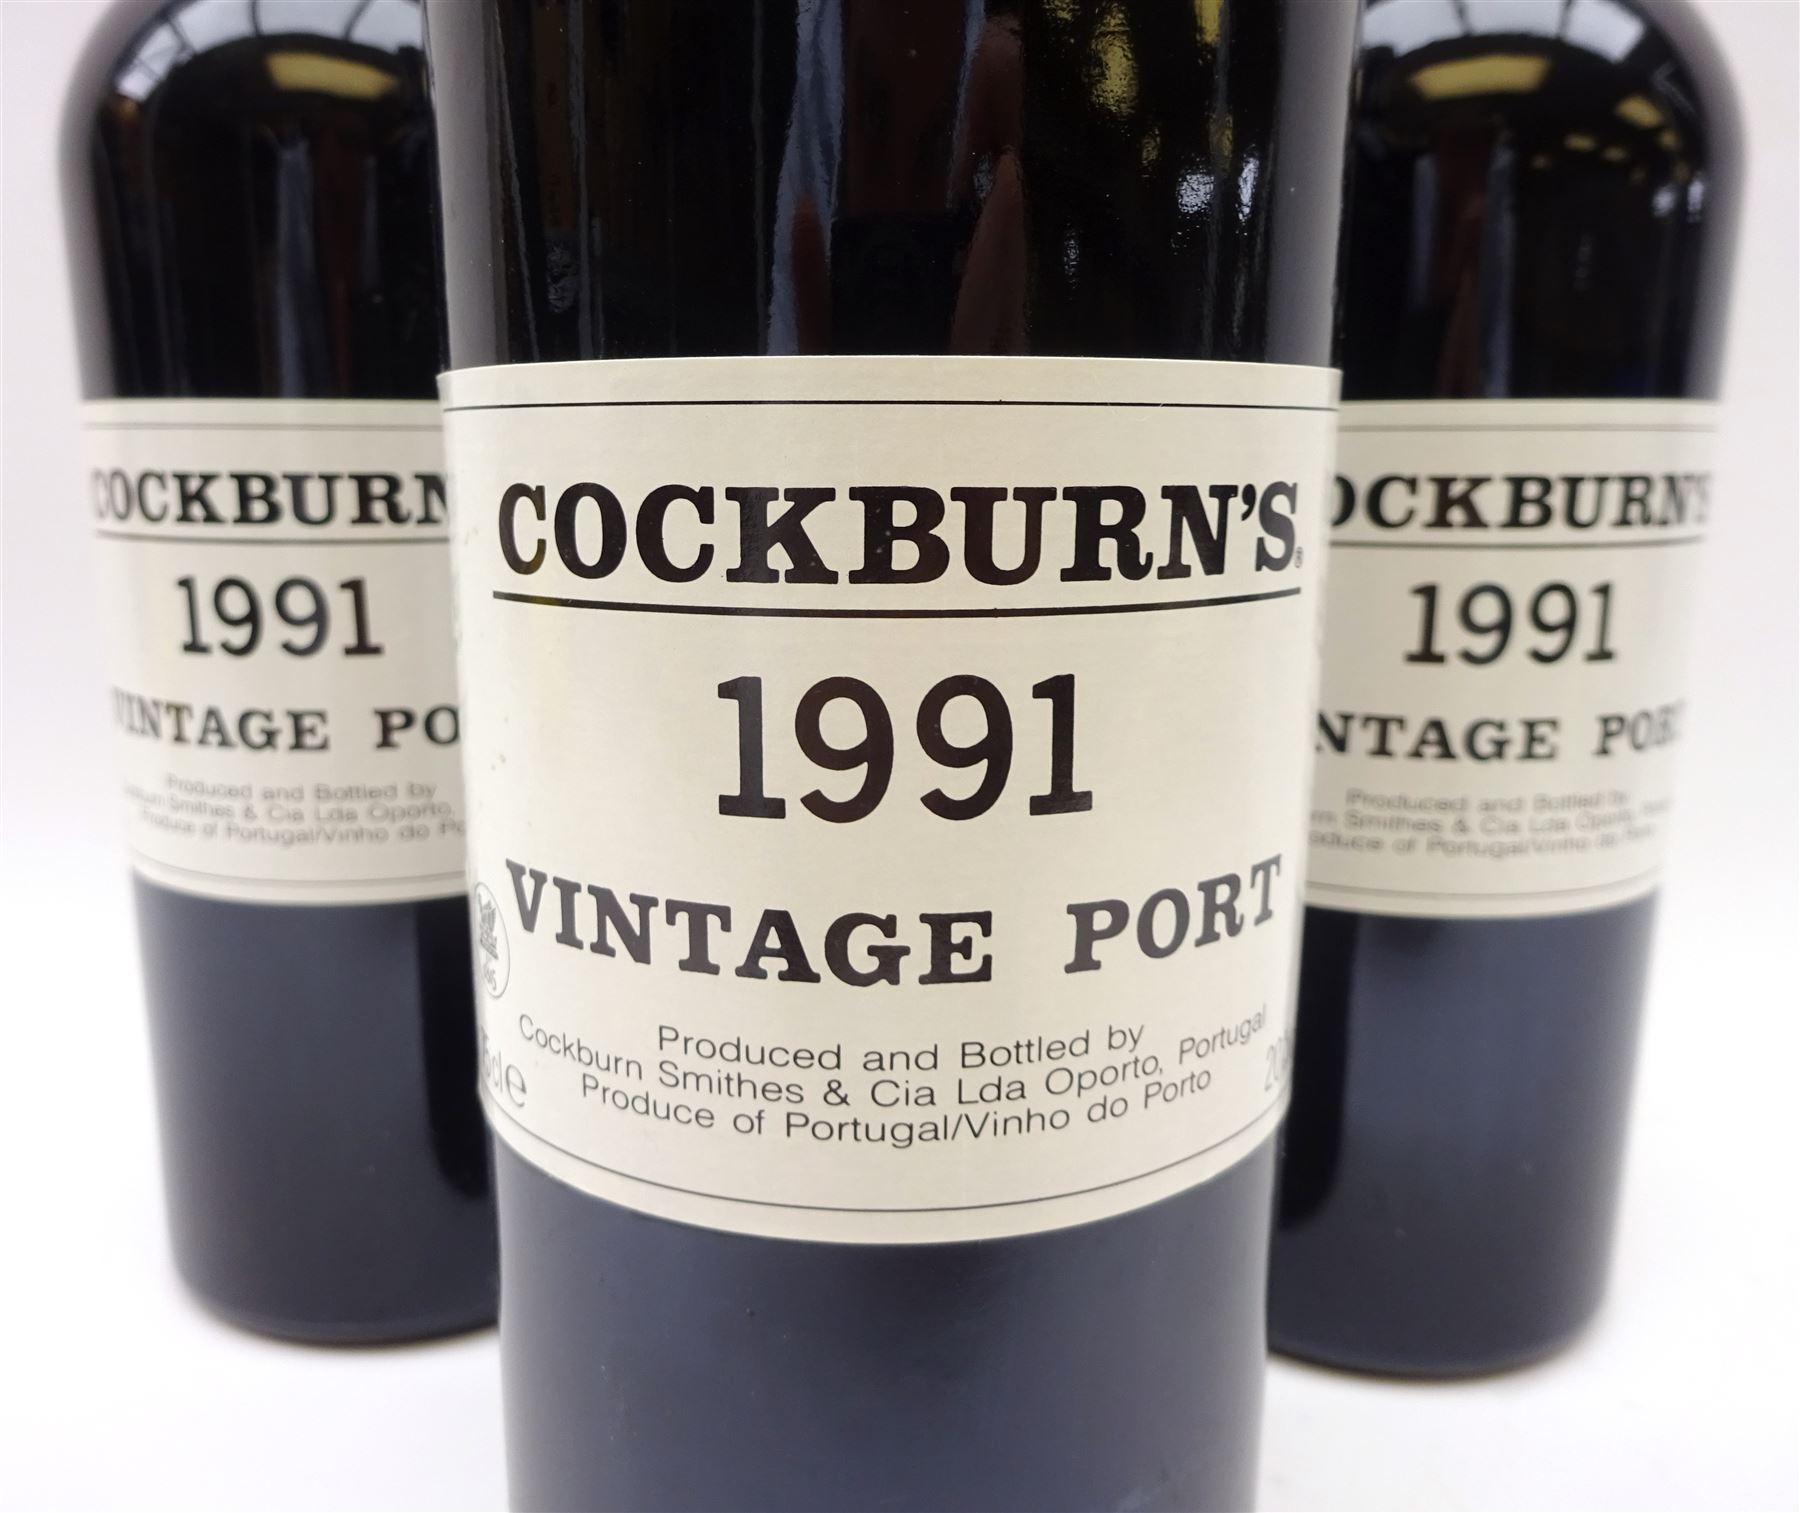 Cockburn's 1991 vintage port - Image 2 of 2